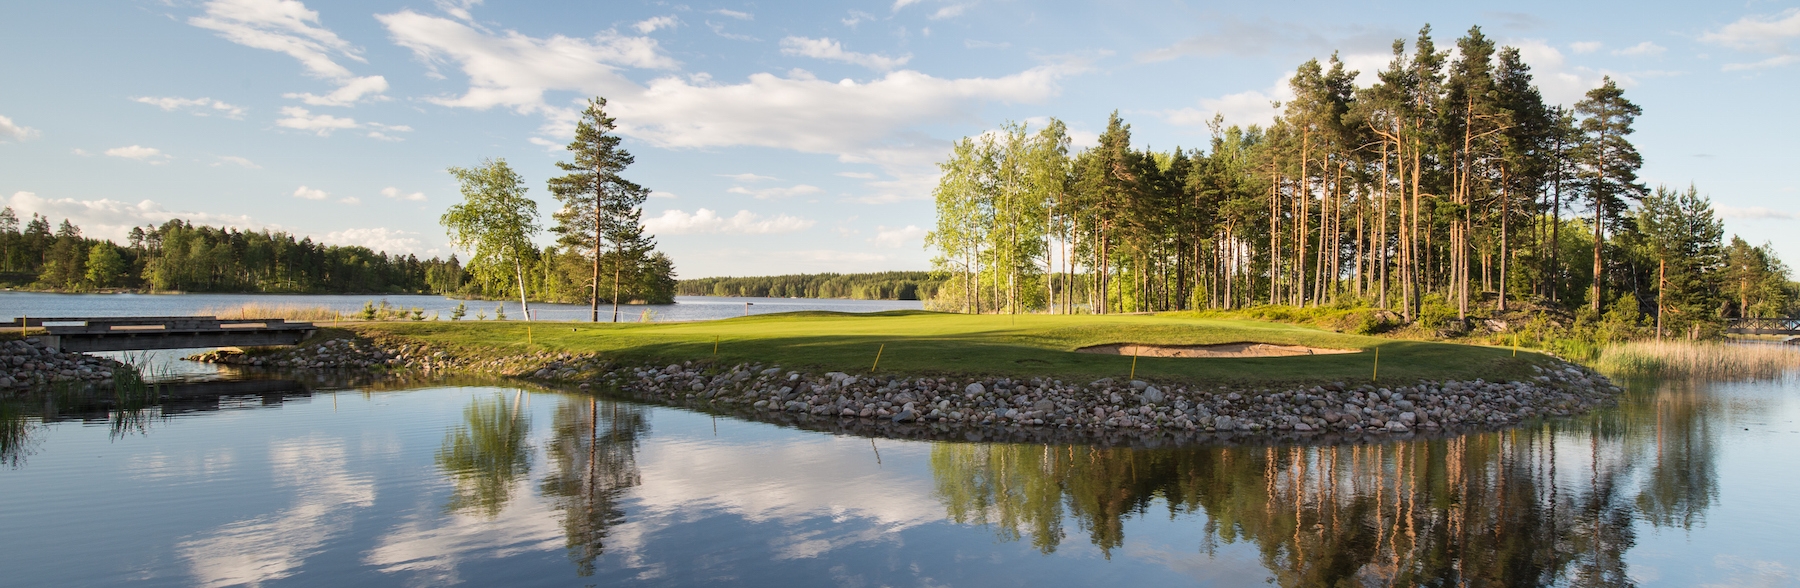 芬兰高尔夫球场NO.3Viipurin Golf Etelä-Saimaa Golf